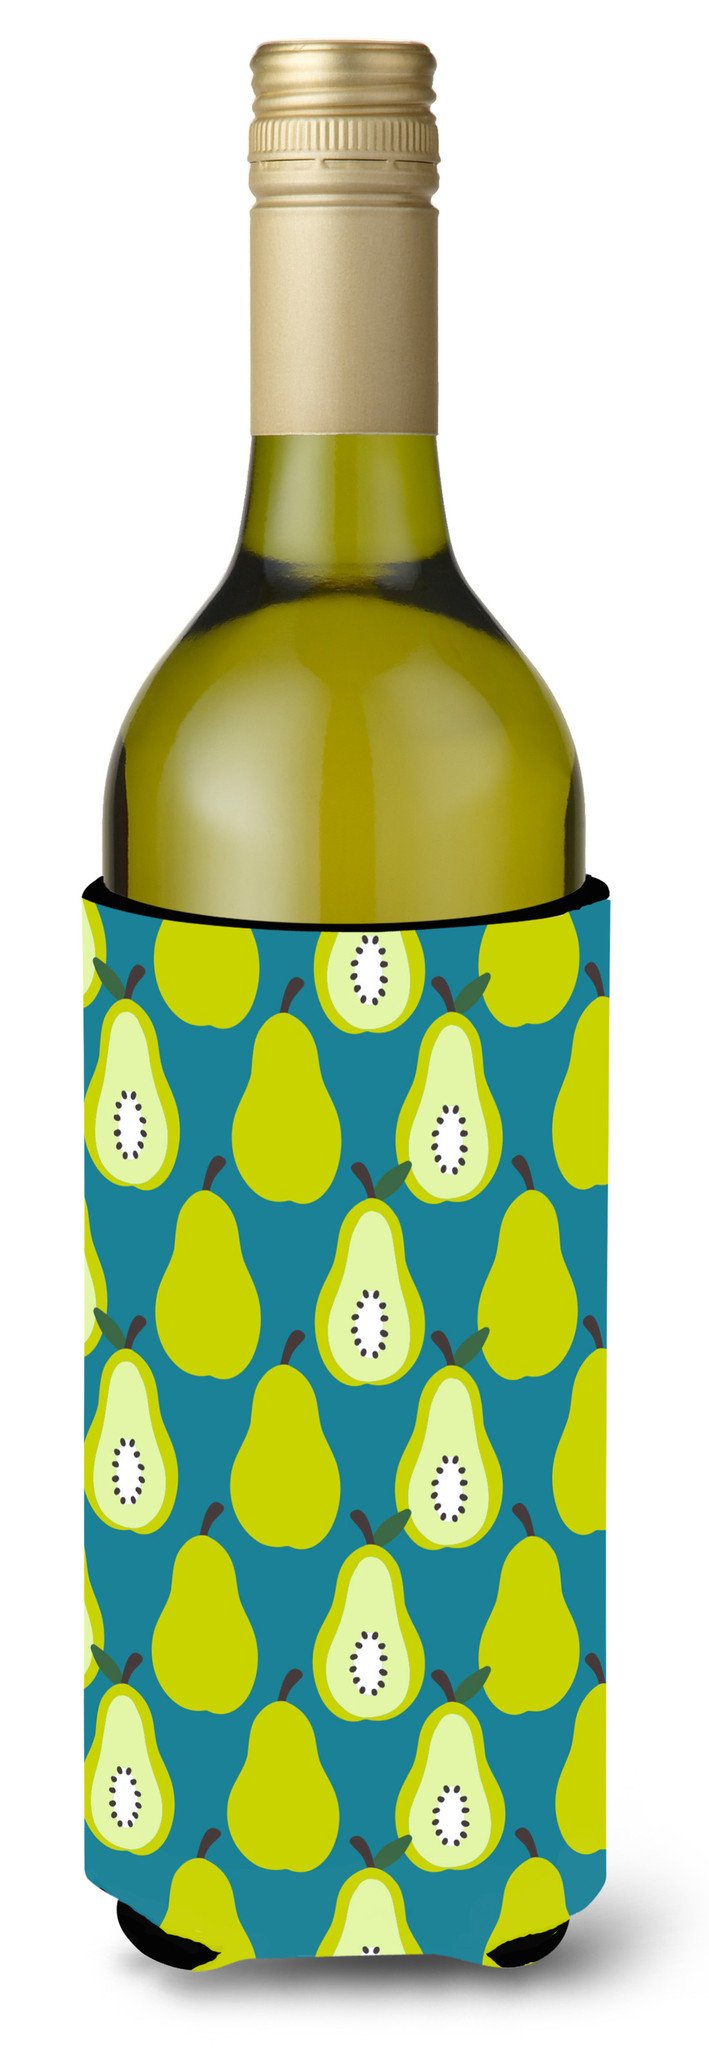 Pears on Green Wine Bottle Beverge Insulator Hugger BB5138LITERK by Caroline's Treasures